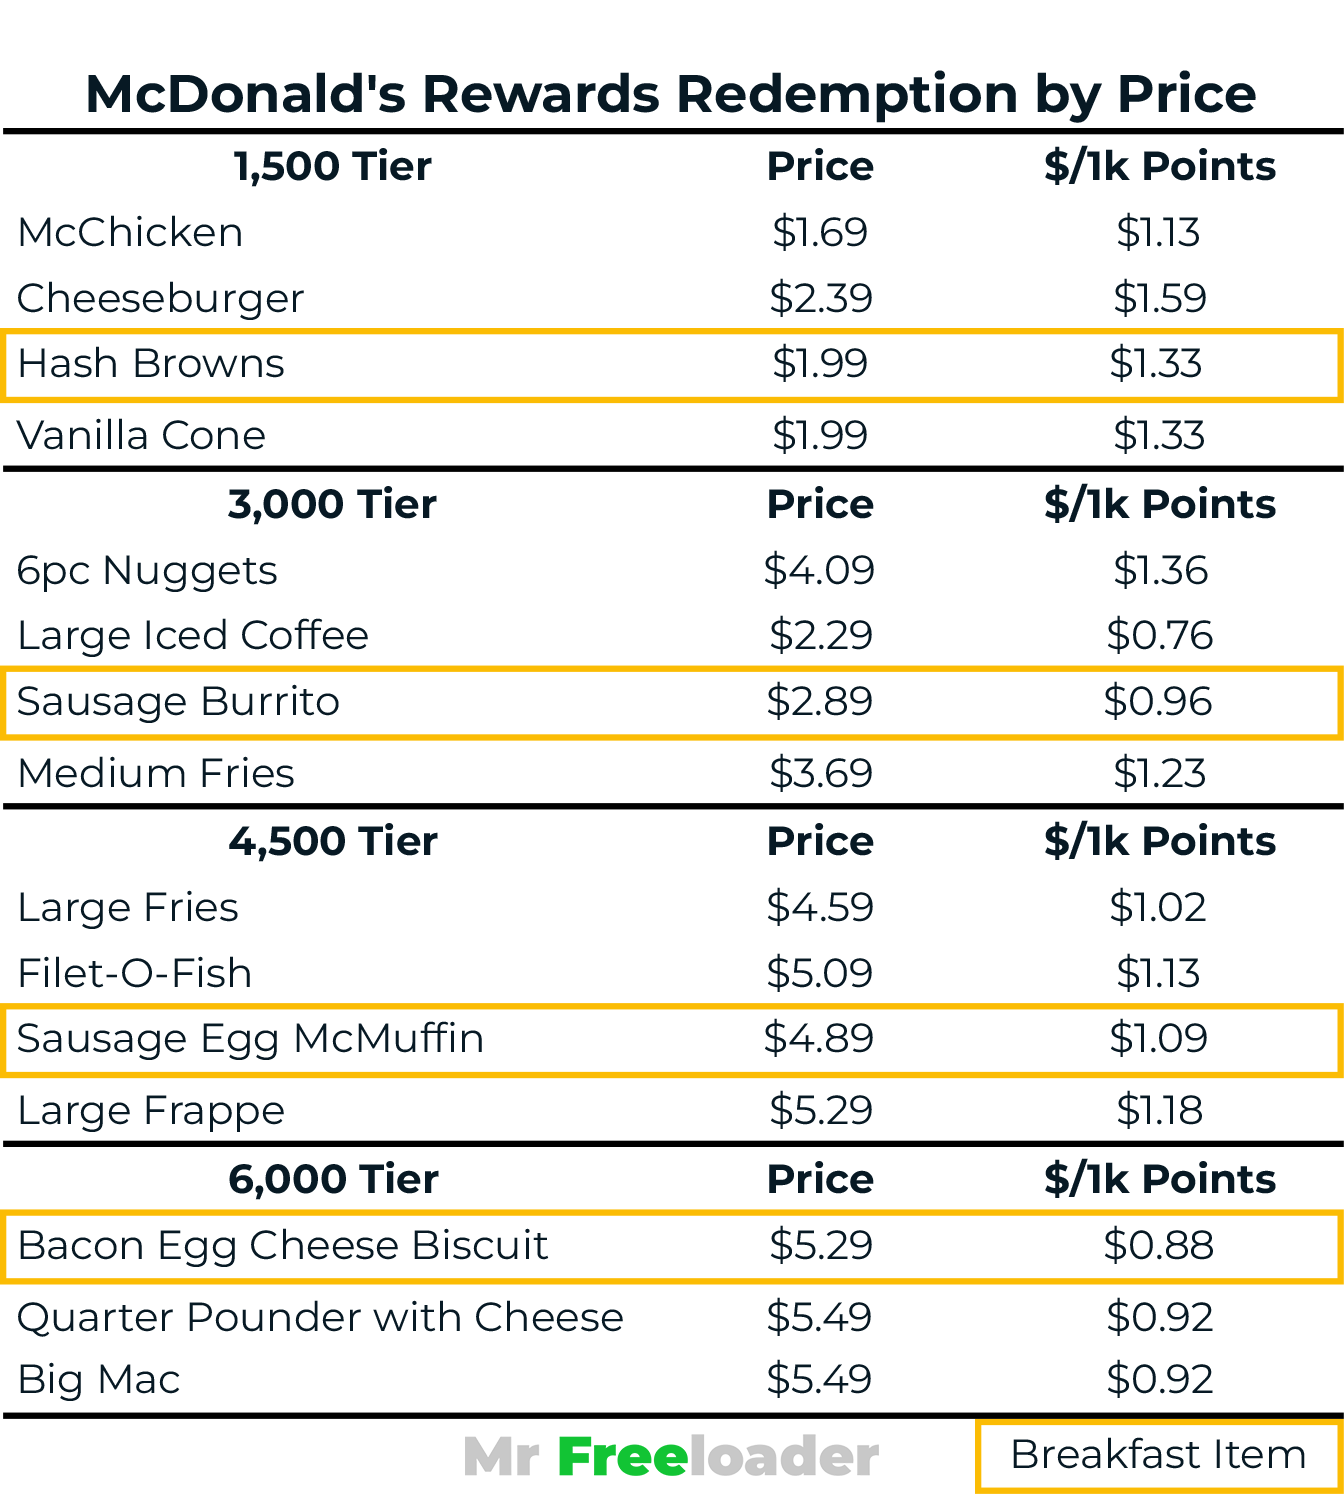 McDonald's Rewards Best Redemption by Price